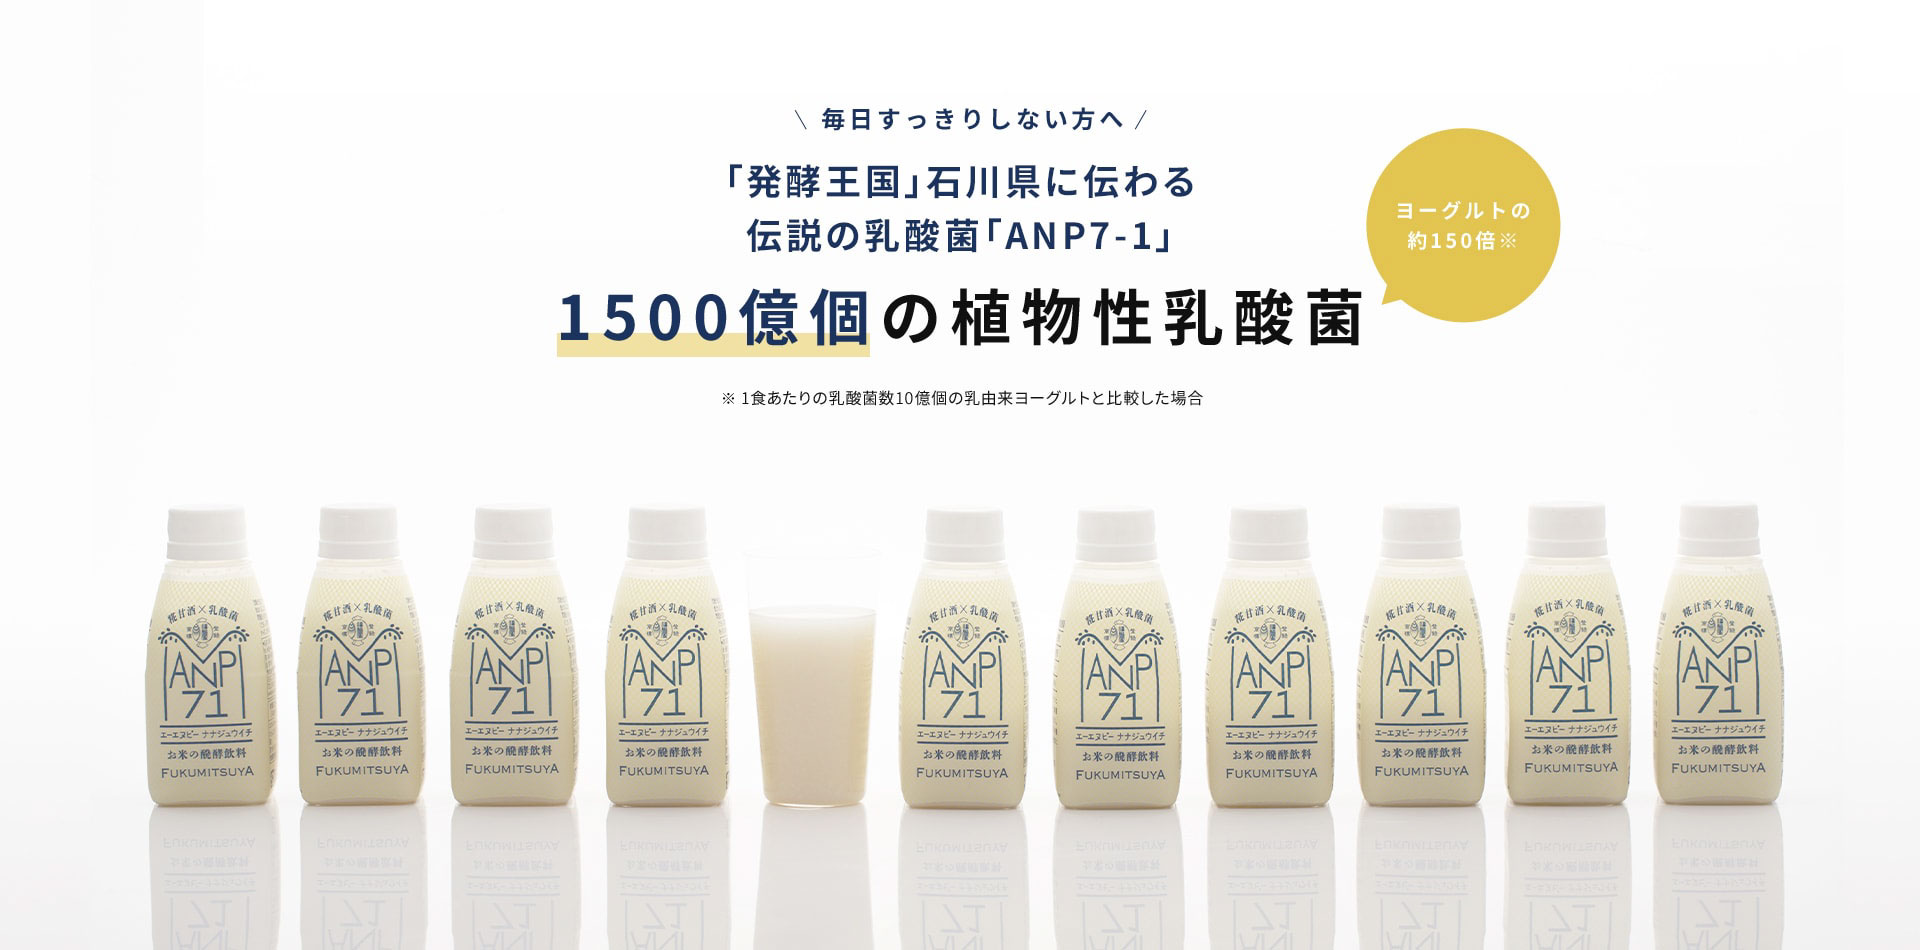 毎日スッキリしない方へ。「発酵王国」石川県に伝わる伝説の乳酸菌「ANP71」1,500億個の植物性乳酸菌